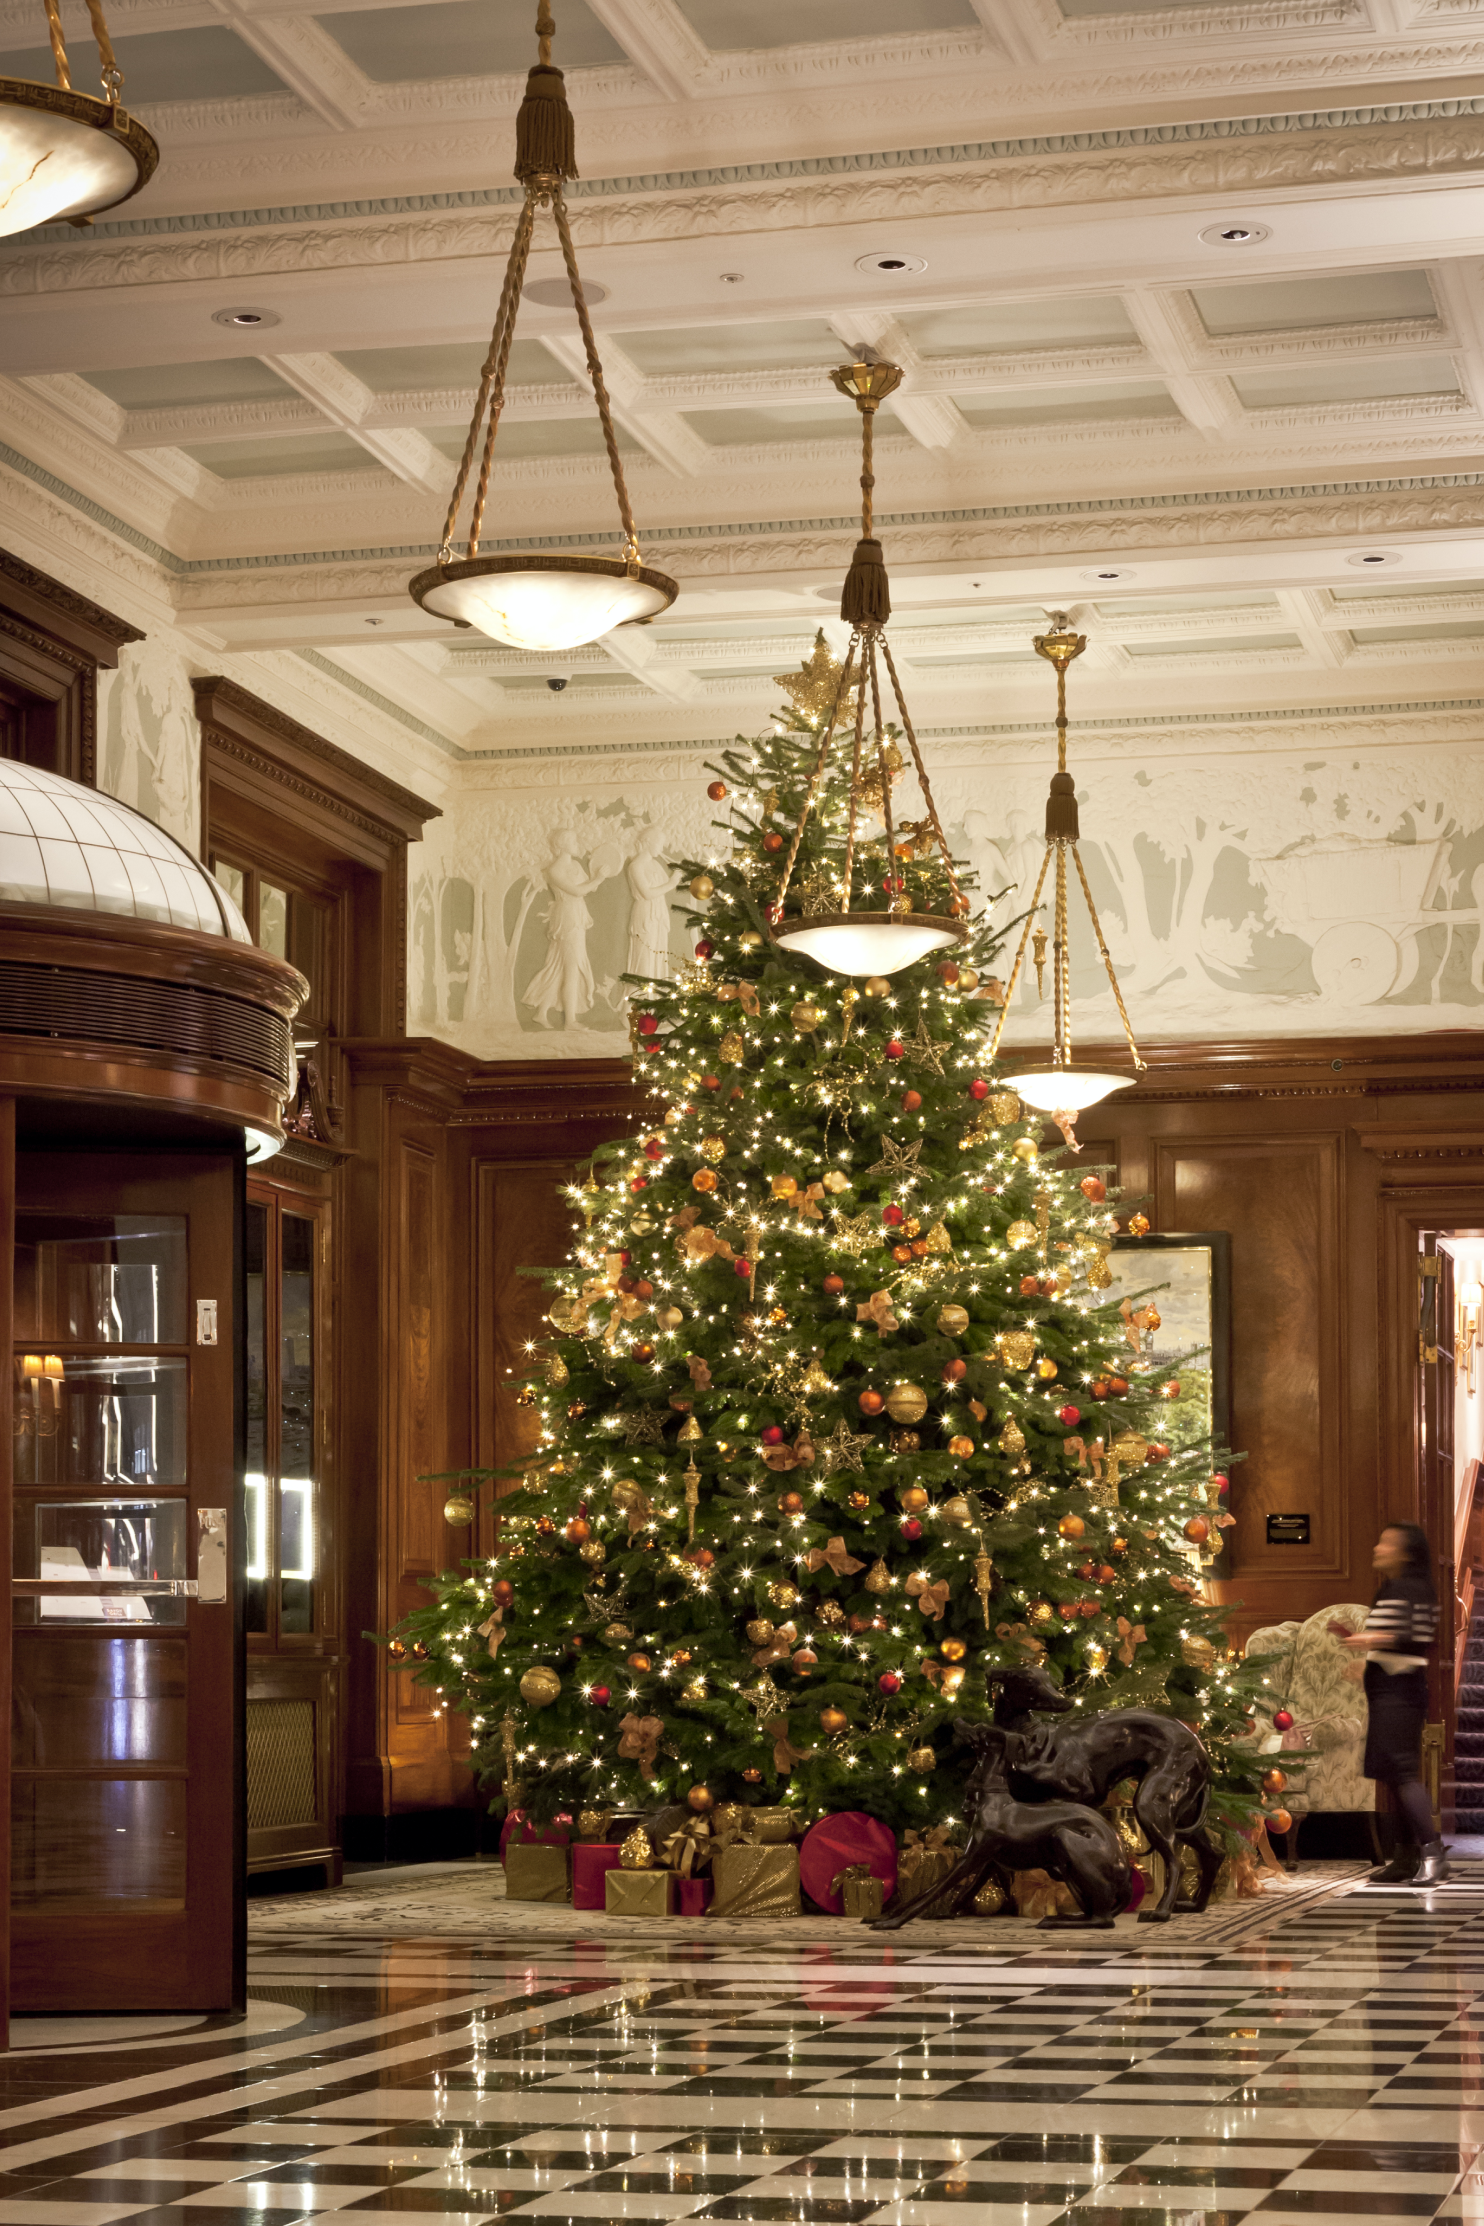 The Savoy Christmas Tree